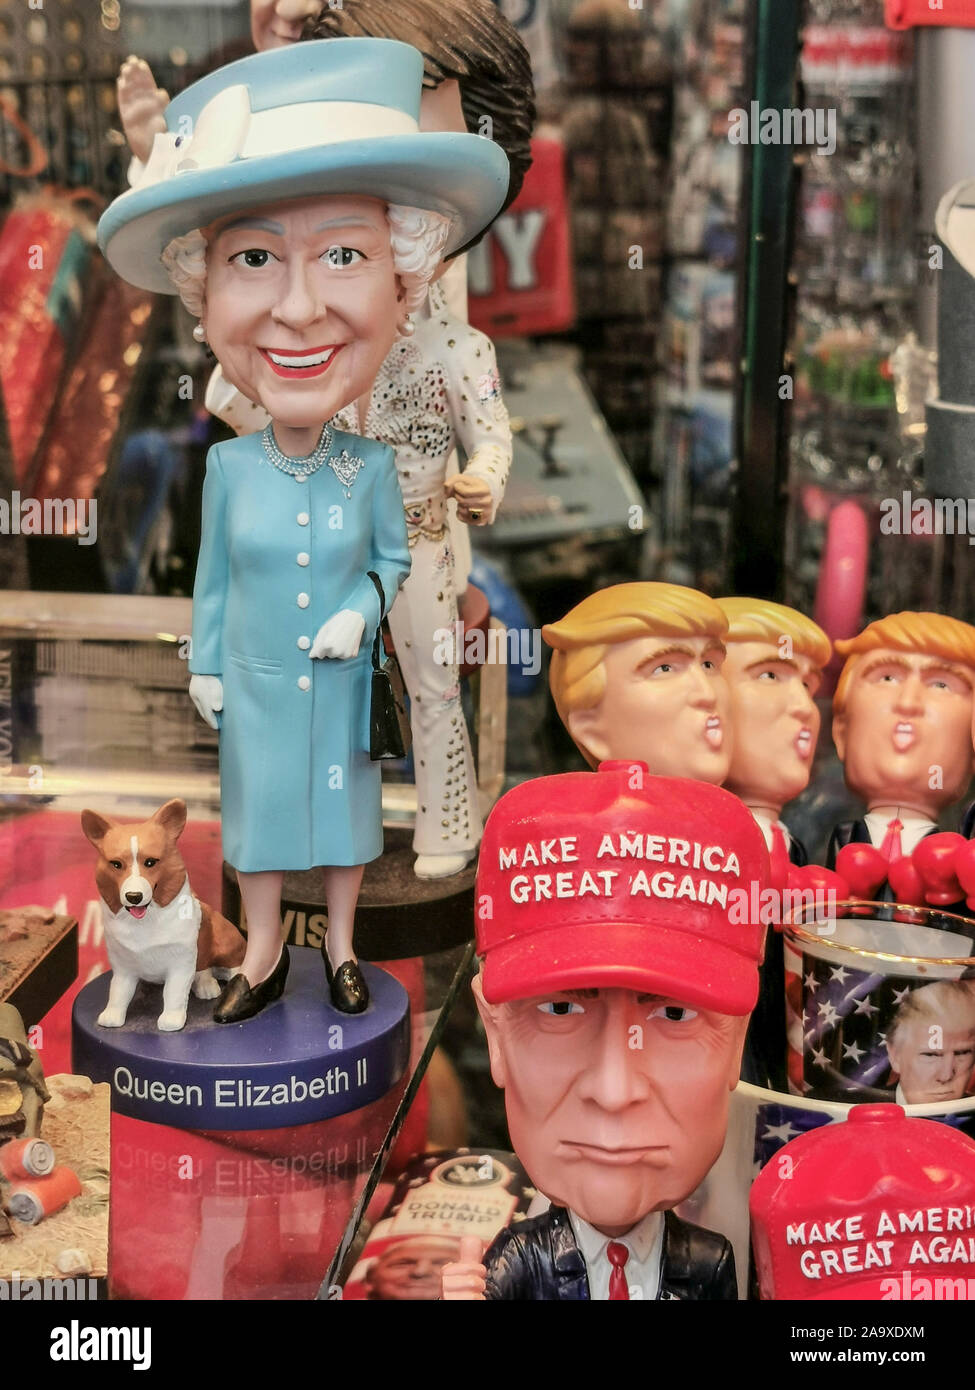 Figurina Queen Elizabeth e Donald Trump,NEW YORK Foto Stock